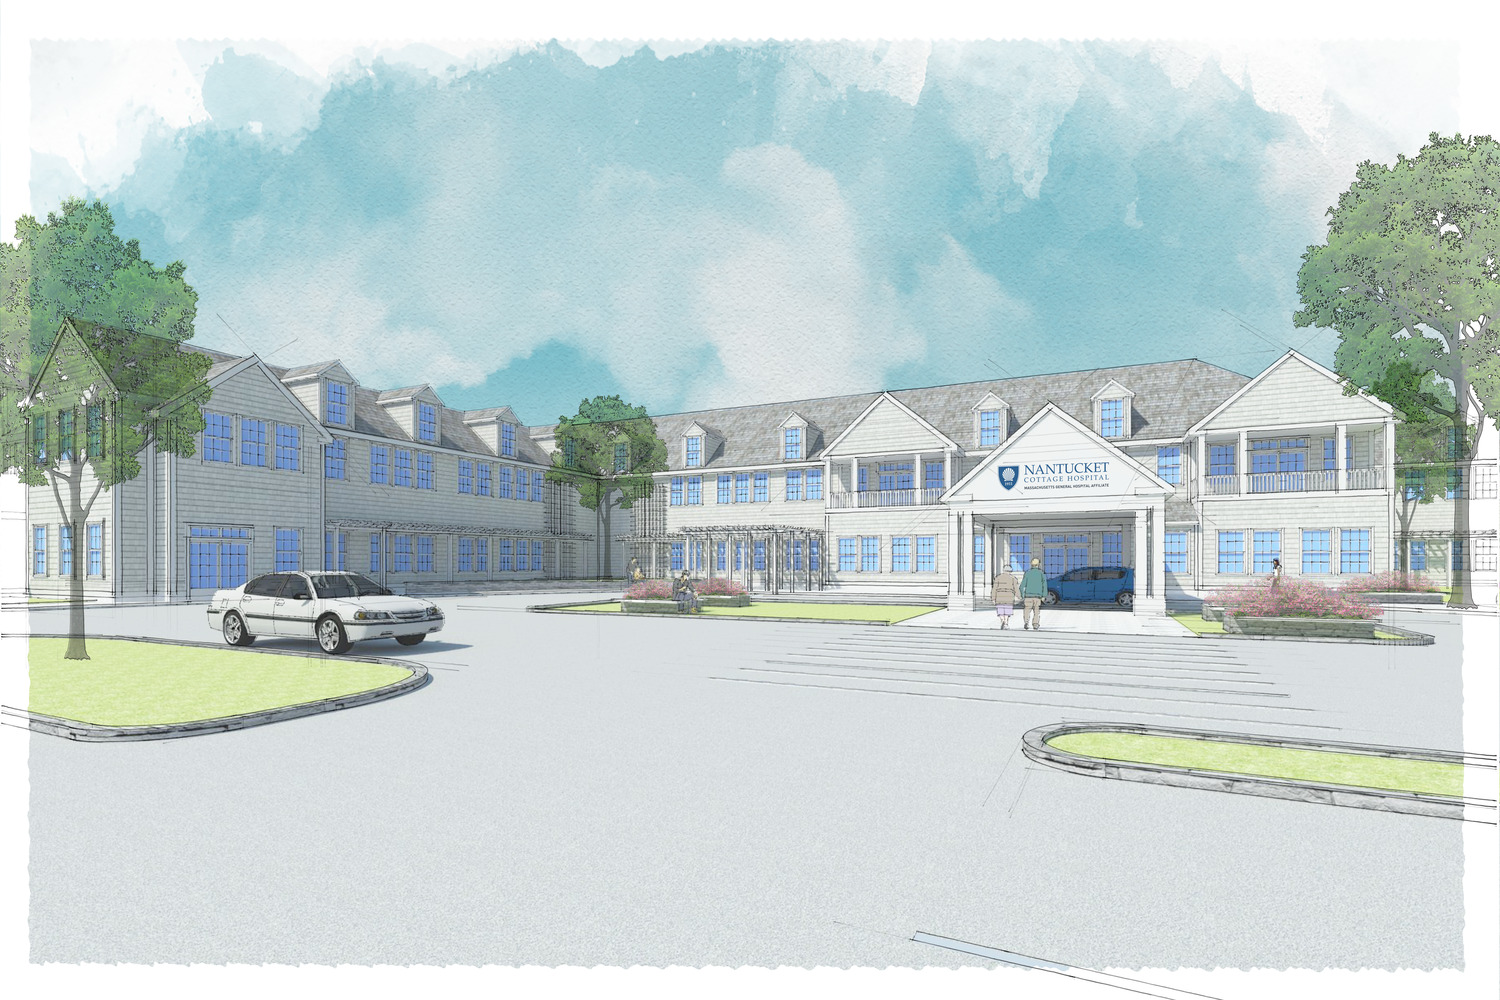 Nantucket Cottage Hospital rendering